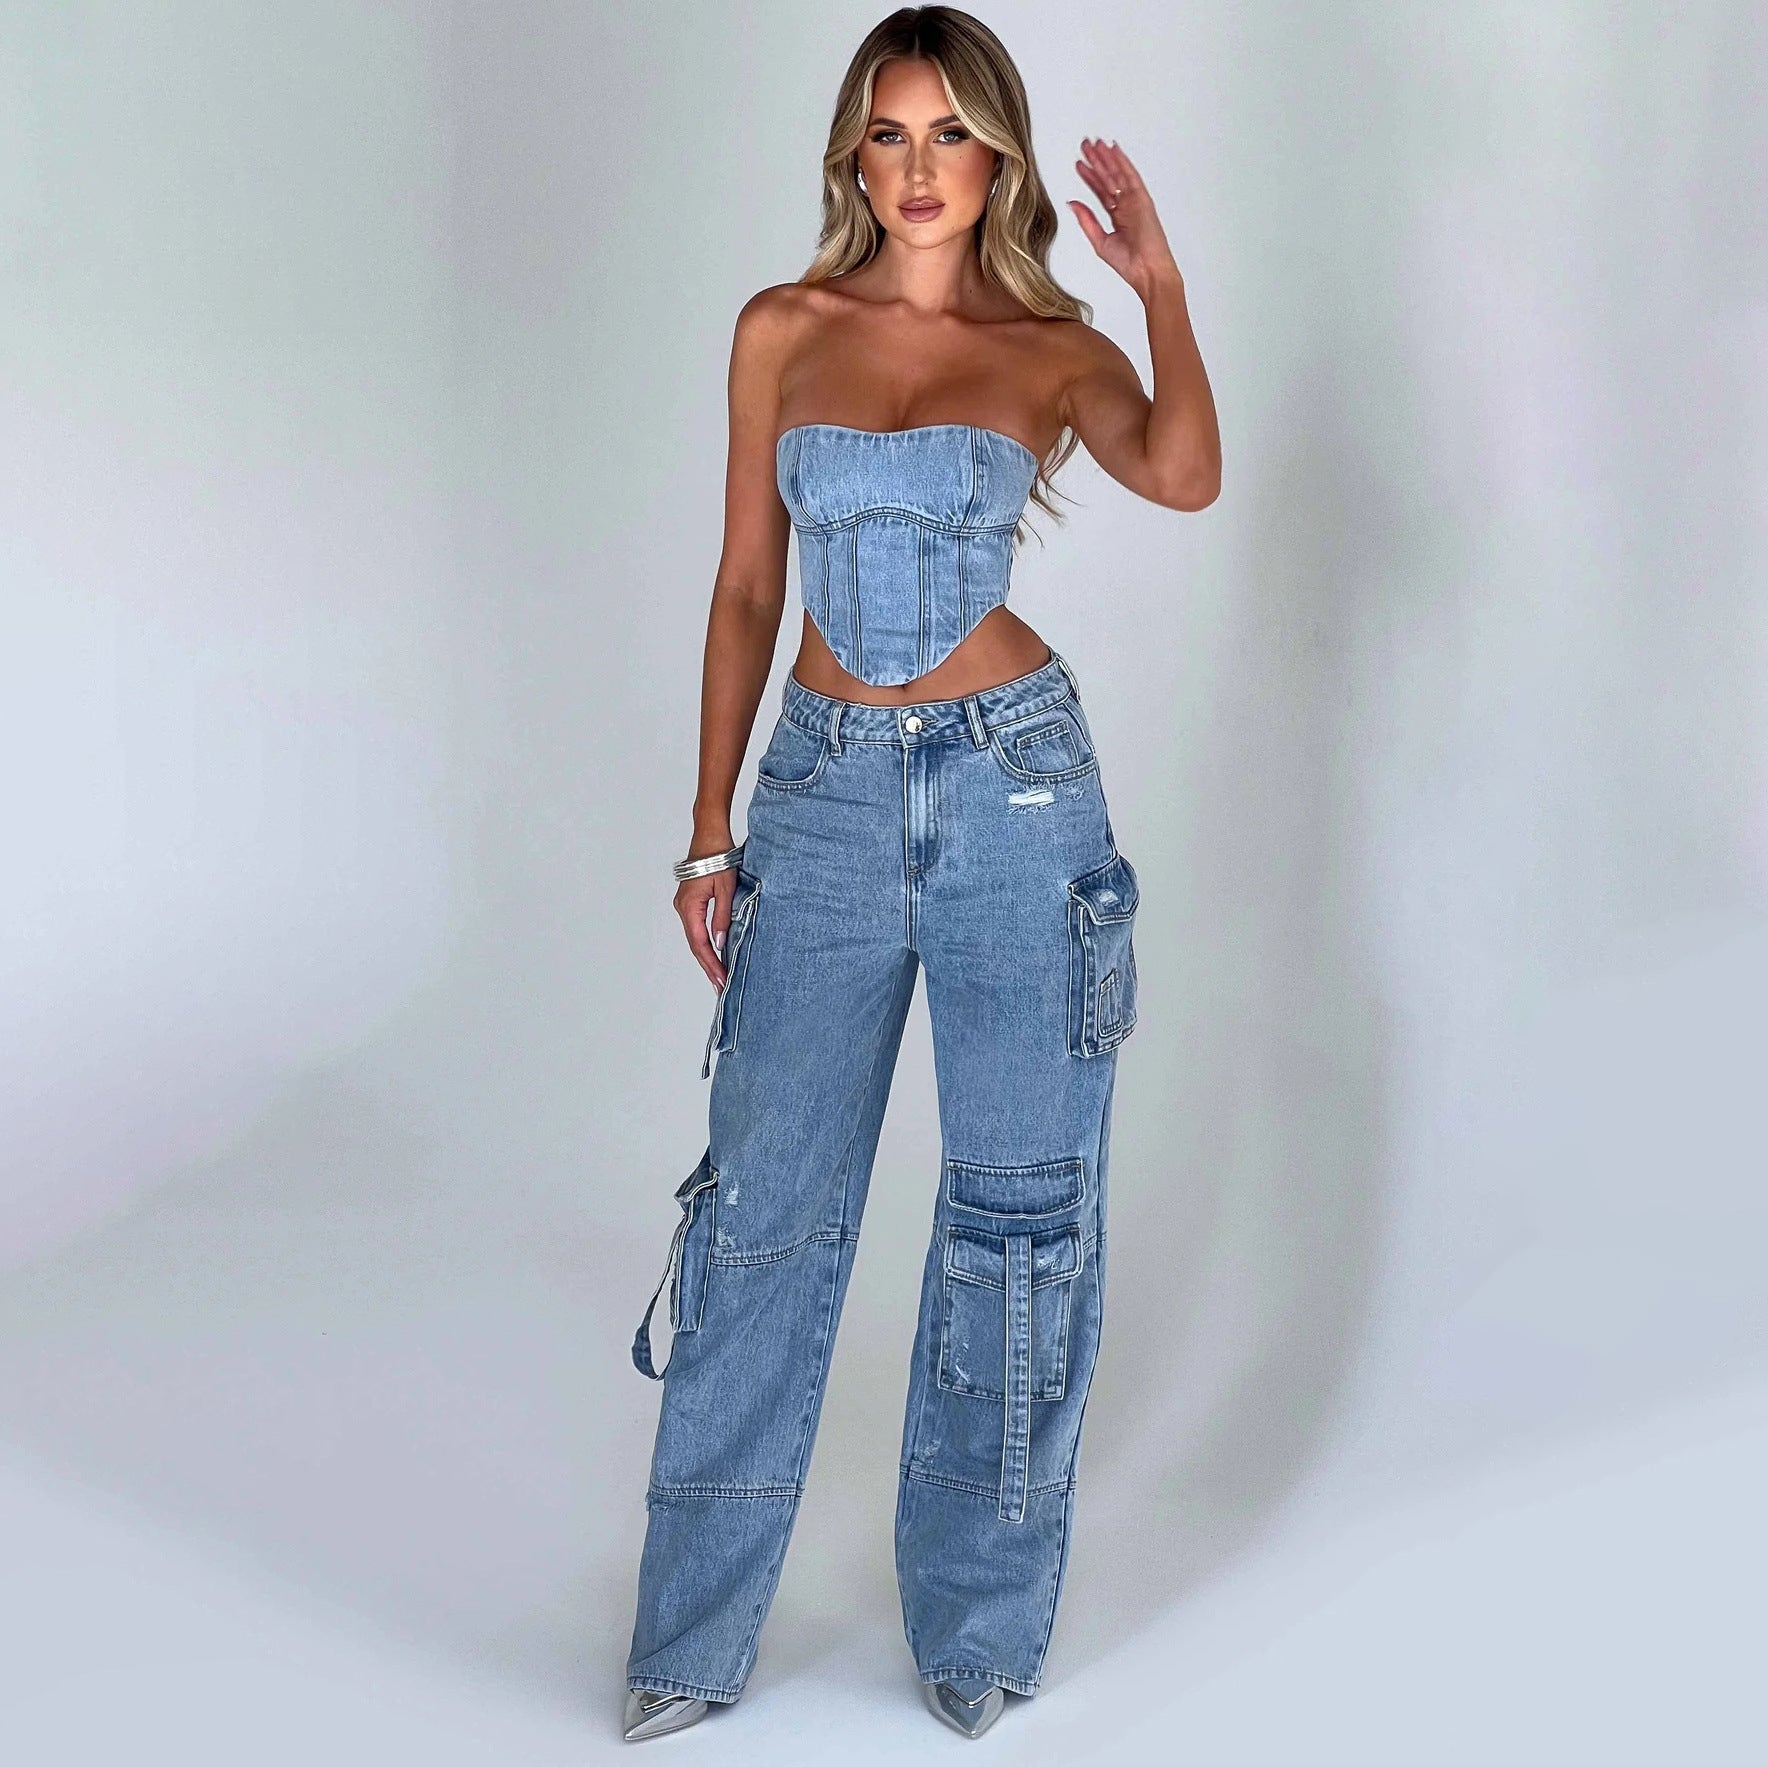 Urban Stitch – Low-Waist Jeans